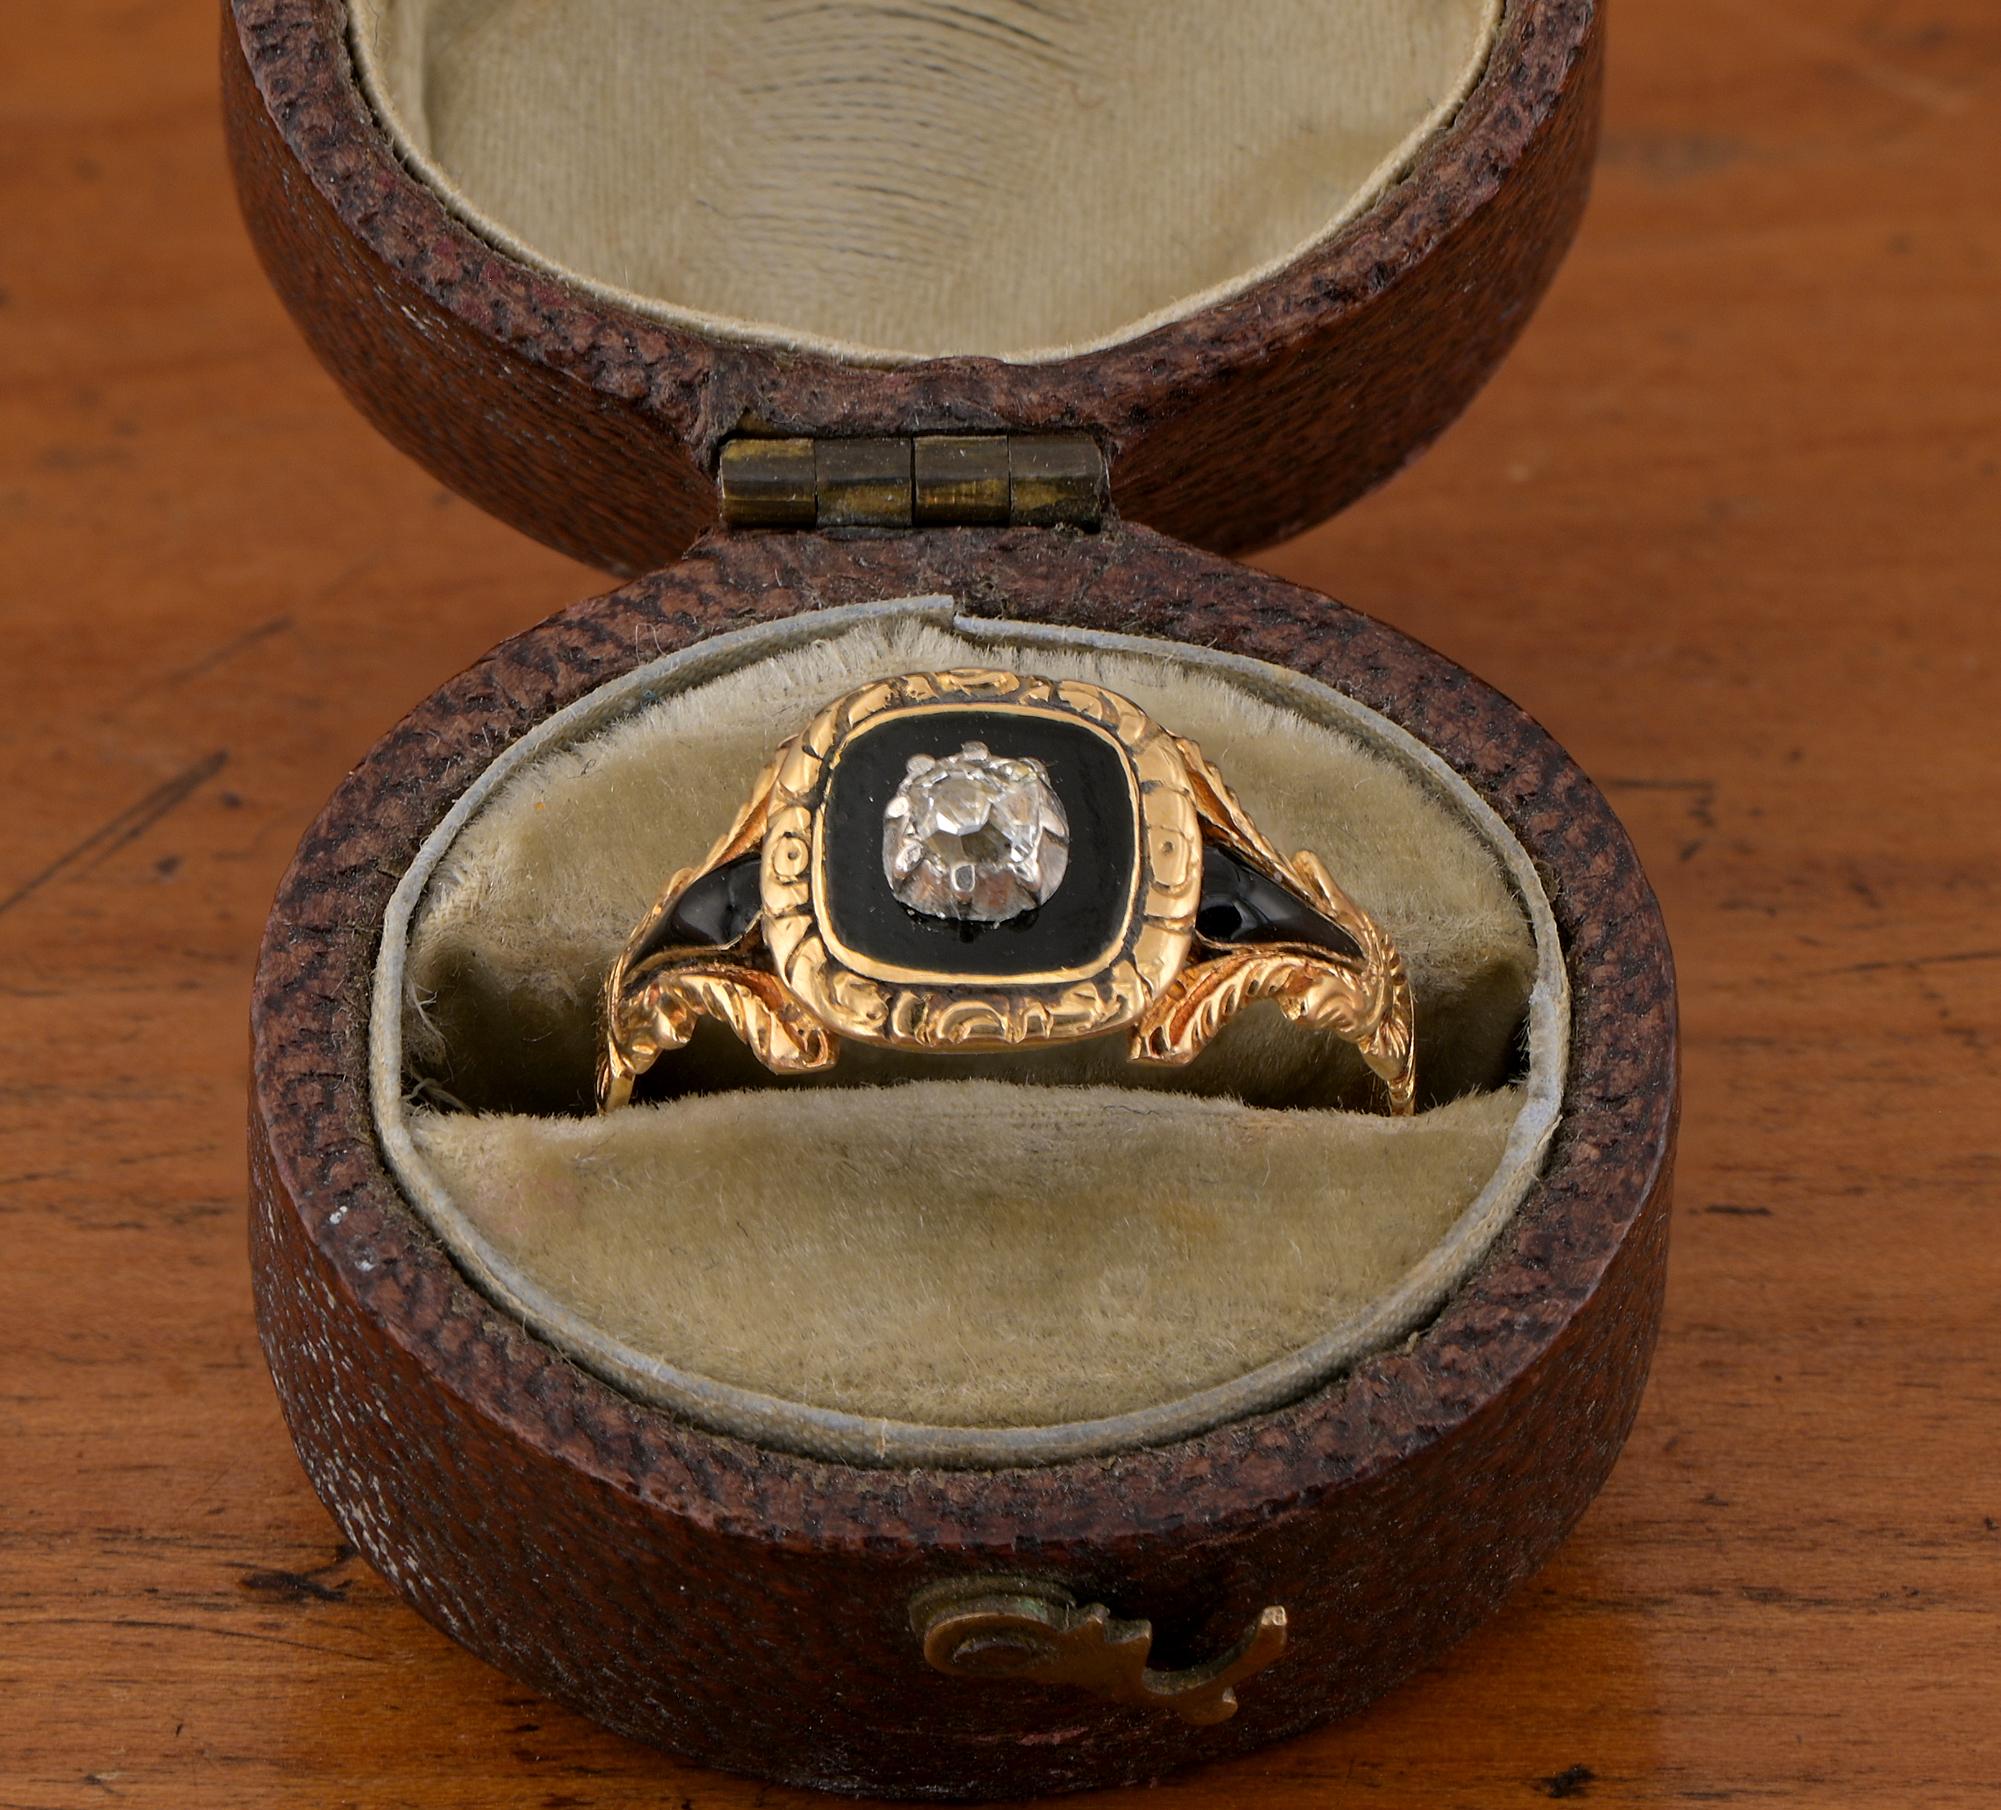 Bague de deuil en or jaune 18 carats, d'époque géorgienne, en diamant et émail noir, sertie d'un diamant de taille ancienne dans une bordure d'émail noir, les épaules gravées décorées d'autres émaux.
Avec un compartiment à médaillon recouvert de